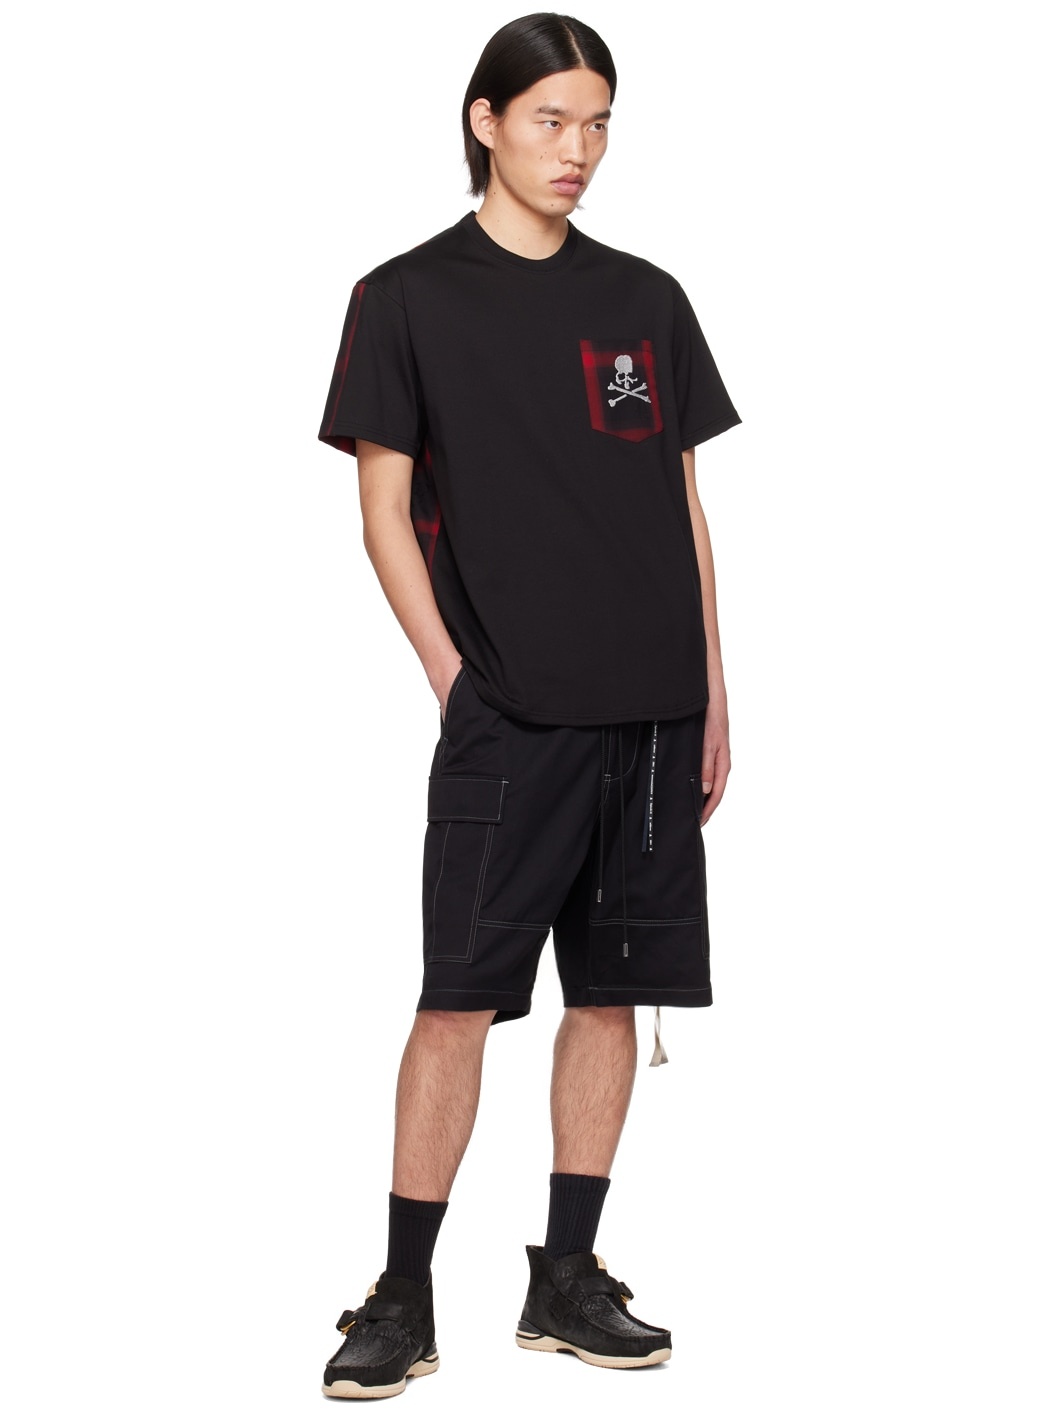 Black & Red Check T-Shirt - 4